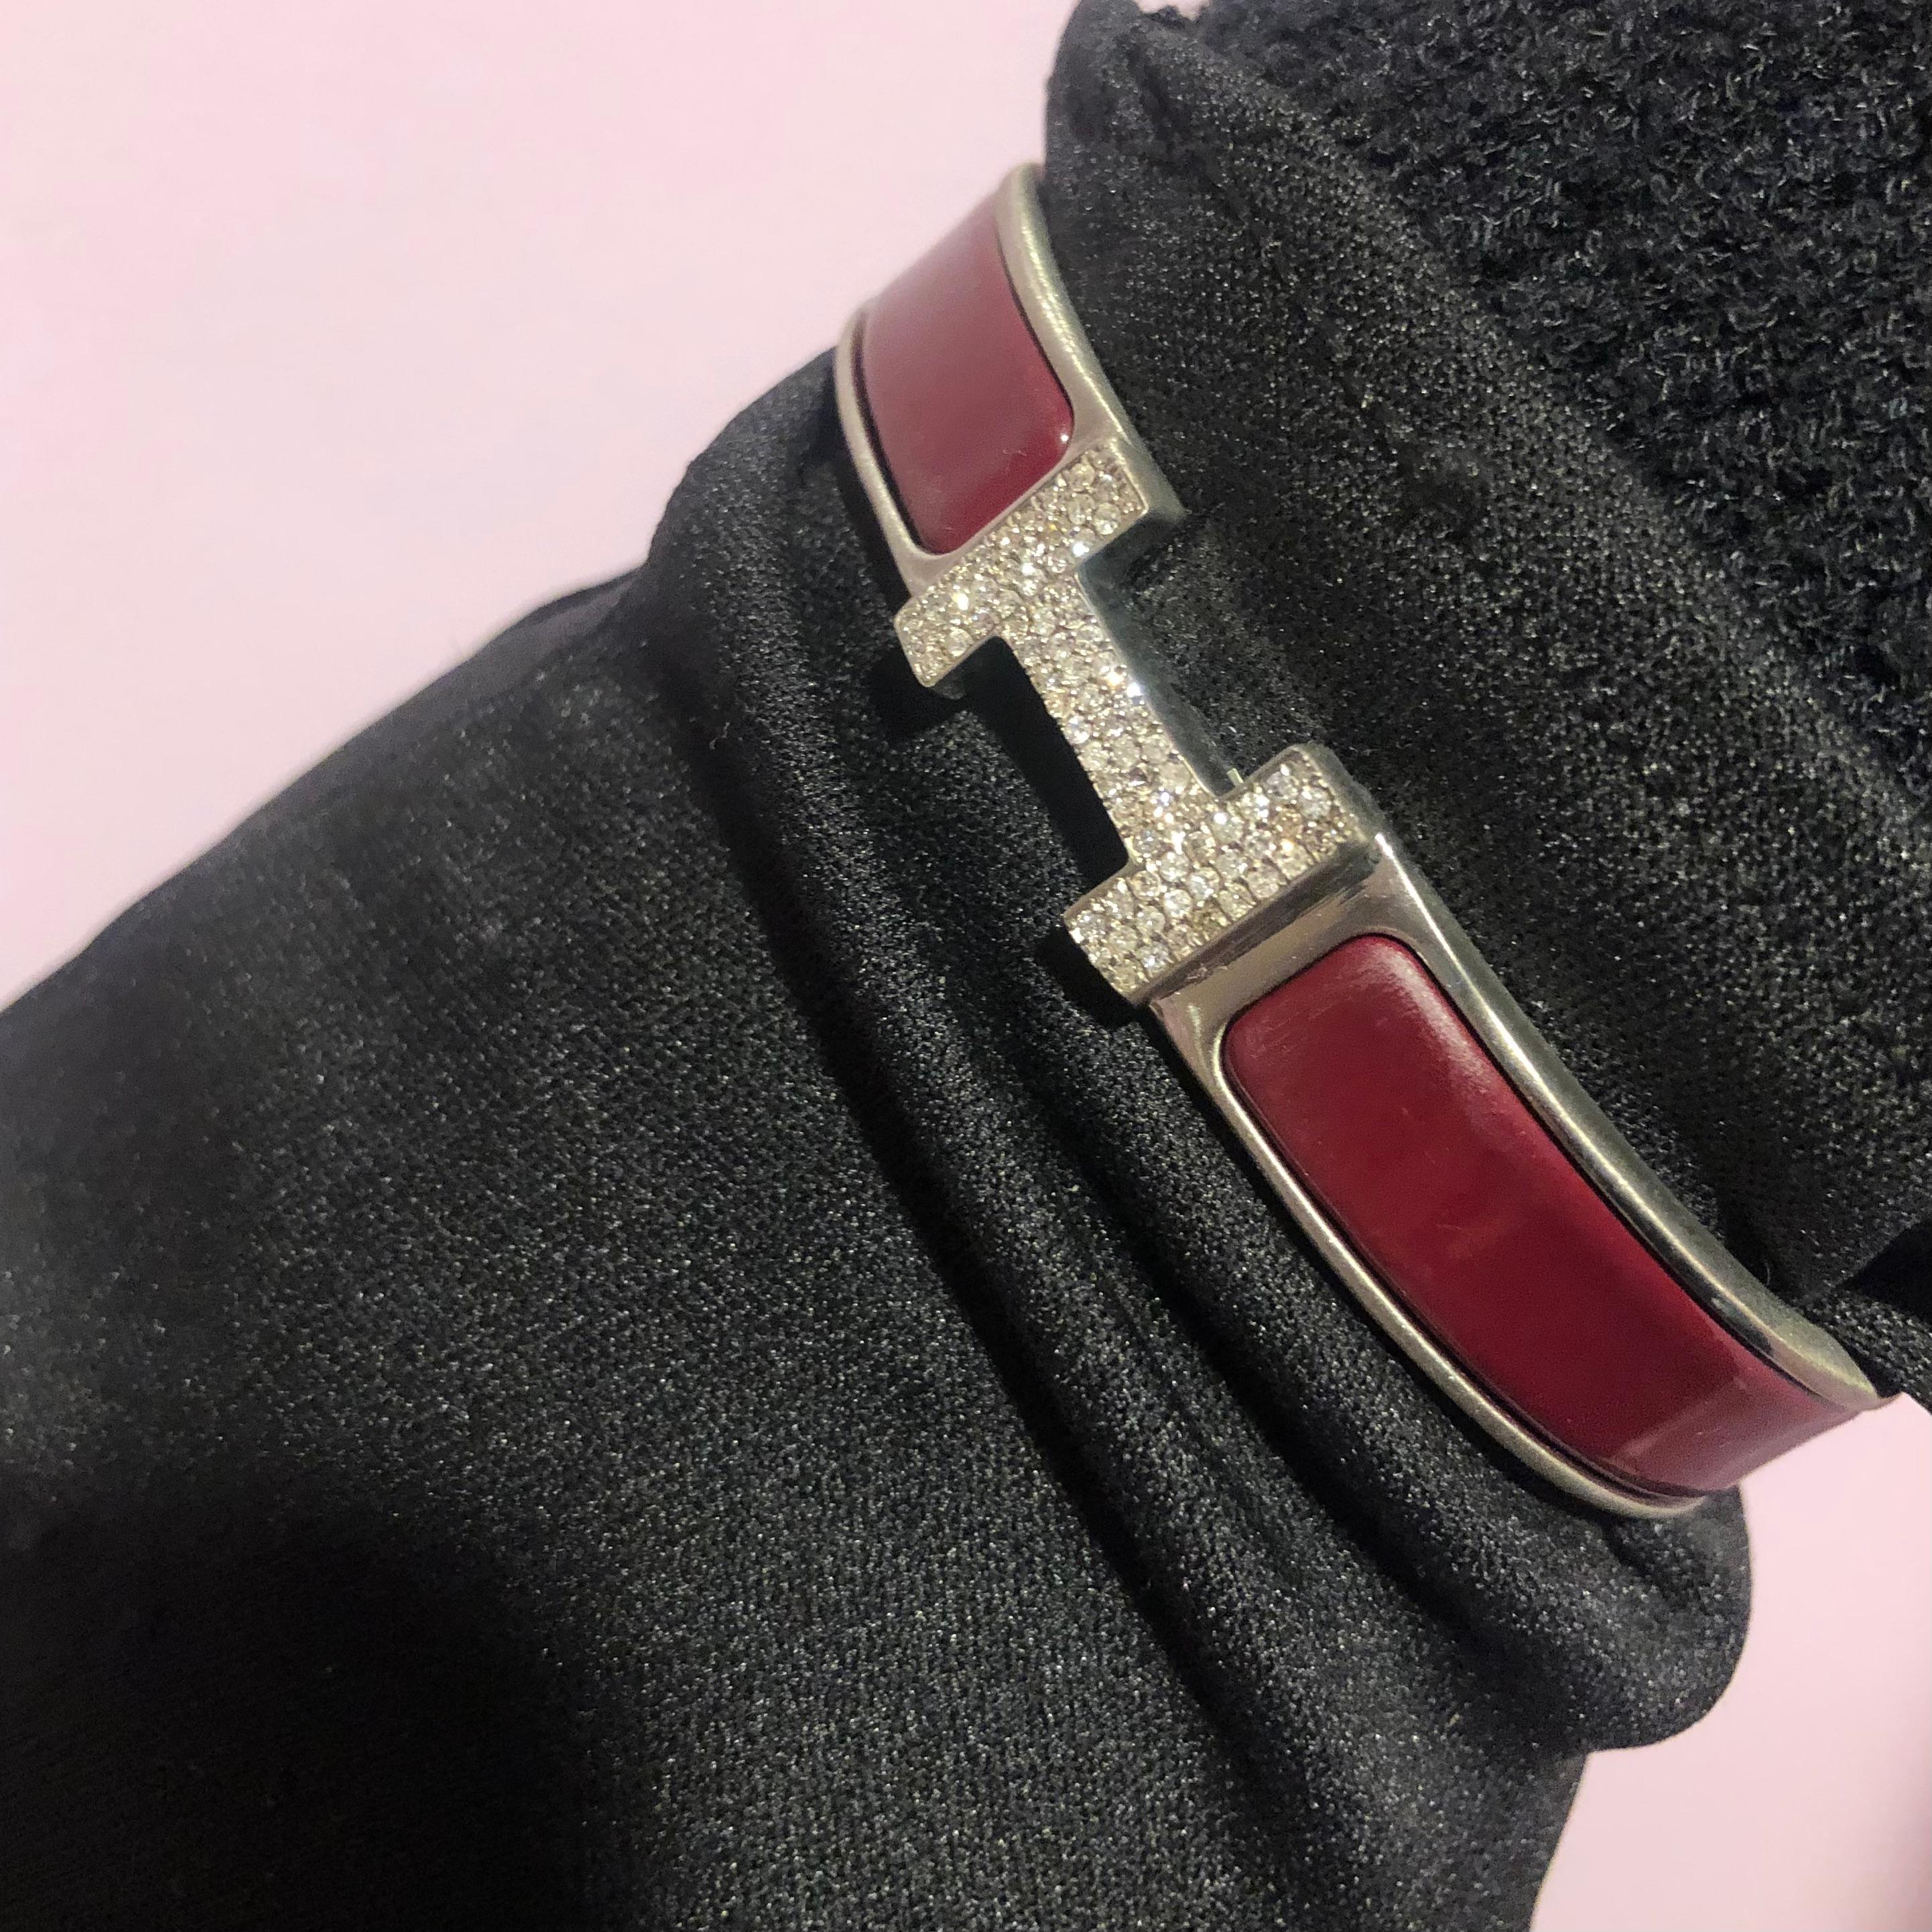 Custom Diamond Hermes Clic H Armband komplett mit Originalverpackung.

Ein originales Hermes Clic H Armband in der Größe GM in den Farben Rot und Silber ist individuell von Hand mit ca. 1,25 Karat echten SI-I Diamanten aus Erdminen besetzt. Die